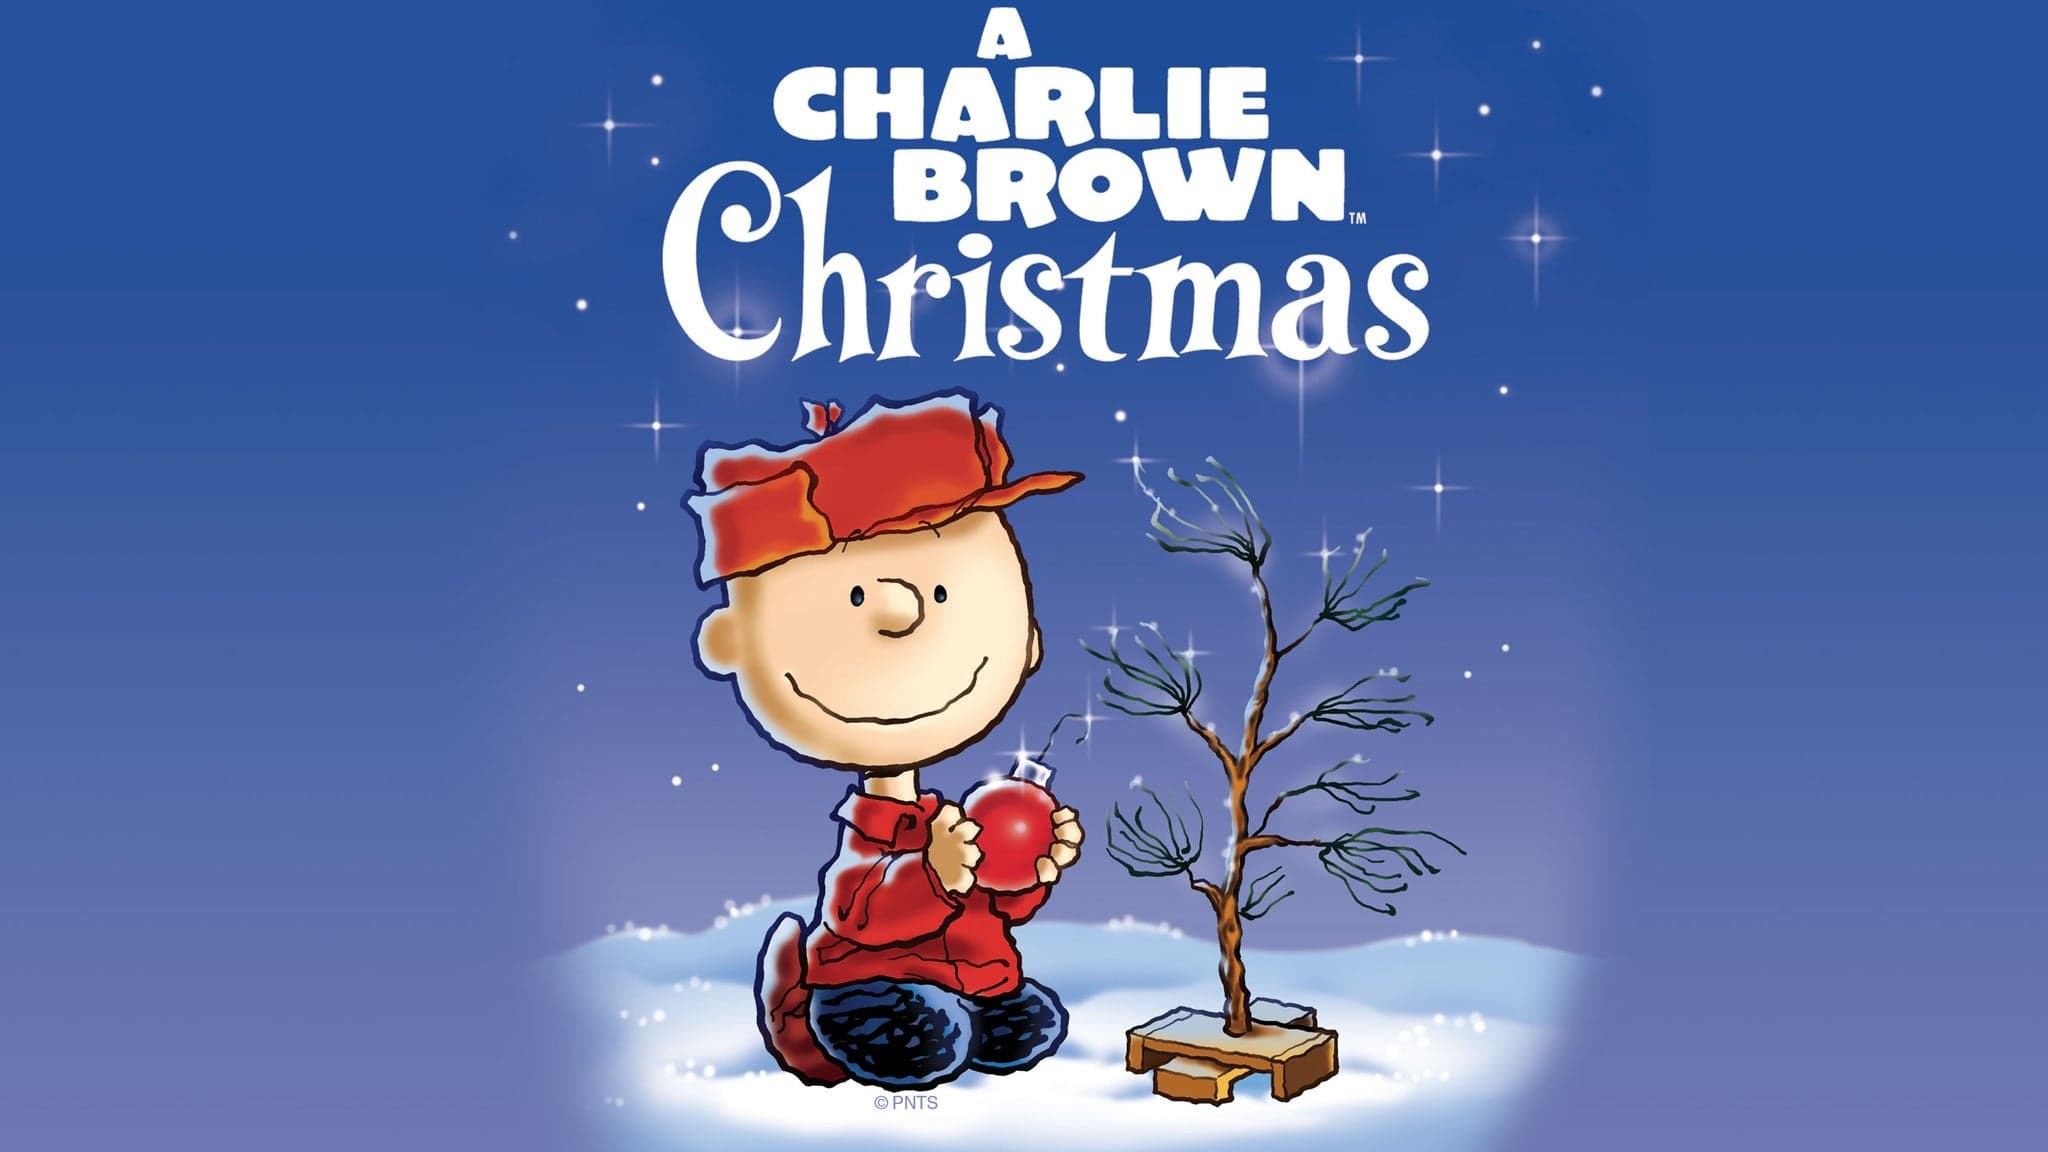 A Charlie Brown Christmas (1965)